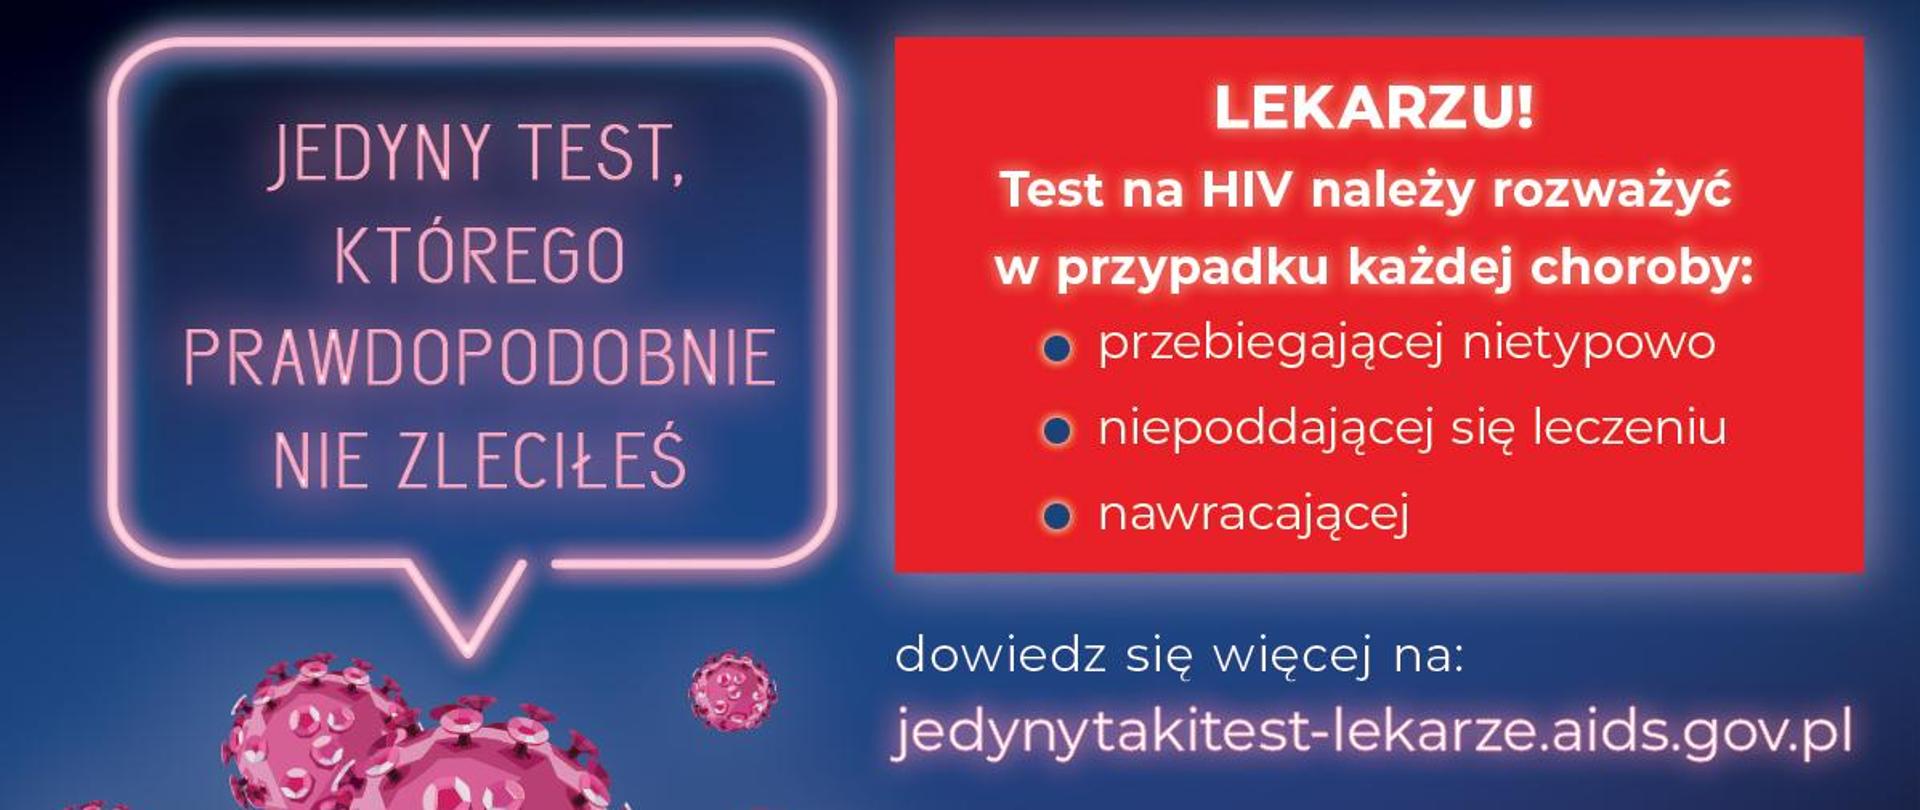 Baner informacyjny Kampanii Jedyny Taki Test - z prawej strony ikony przedstawiające wirusy, nad nimi napis: jedyny test, którego prawdopodobnie nie zleciłeś, po lewej stronie na czerwonym tle: Lekarzu! Test na HIV należy rozważyć w przypadku każdej choroby: przebiegającej nietypowo, niepoddającej się leczeniu, nawracającej, dowiedz się więcej na: jedynytakitest-lekarze.aids.gov.pl poniżej logo - Ministerstwo Zdrowia / Krajowe Centrum ds. AIDS